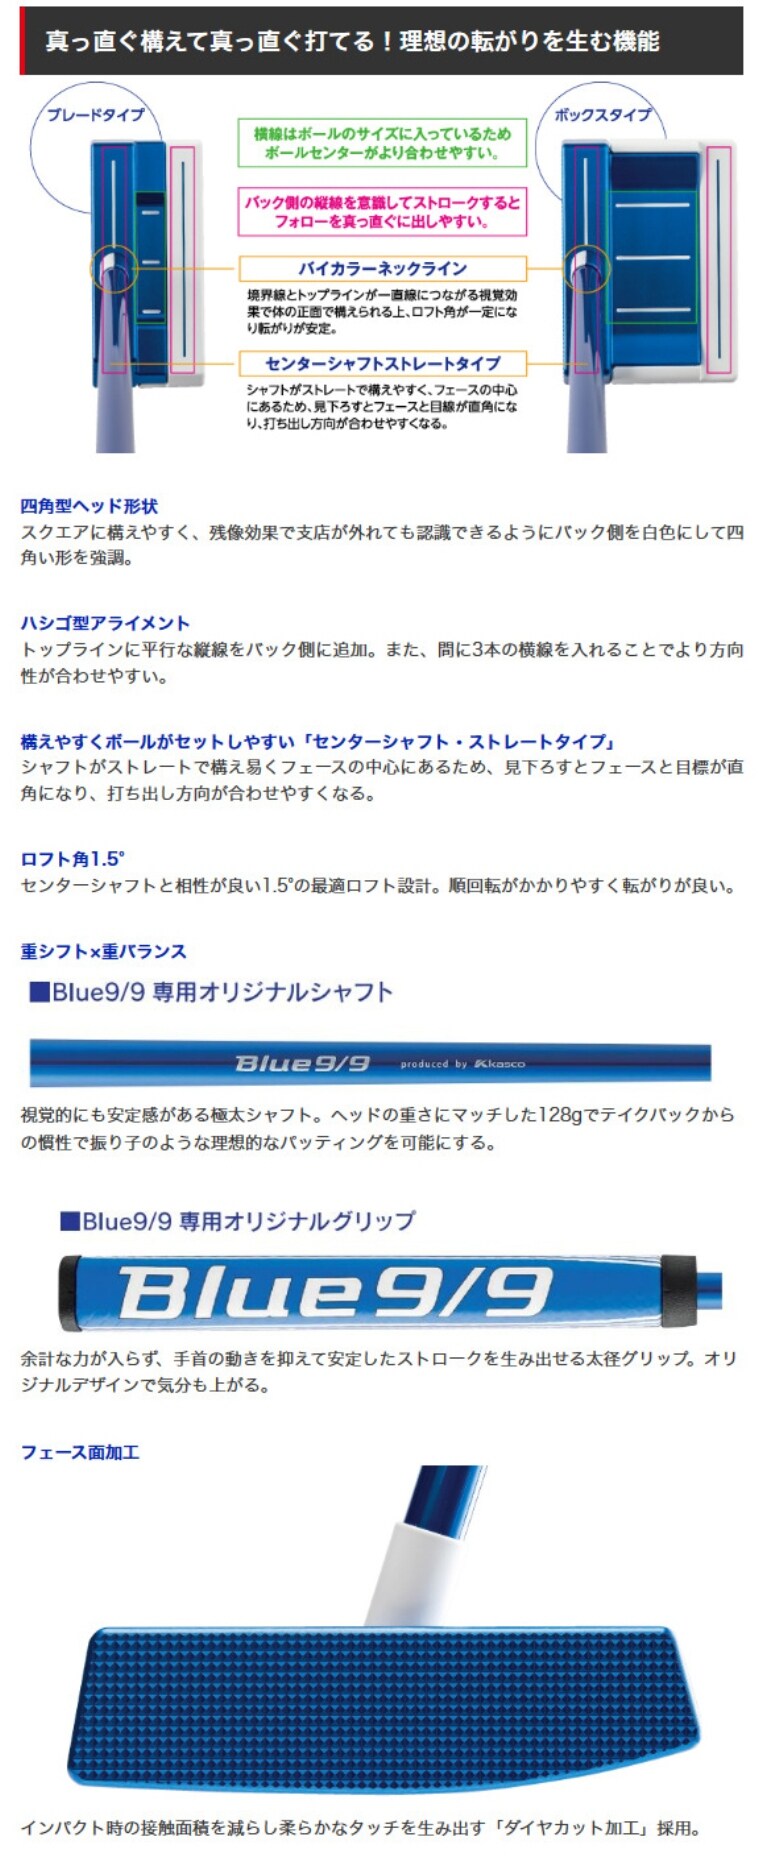 新品、キャスコ ブルー9/9 WB-010 パター Blue